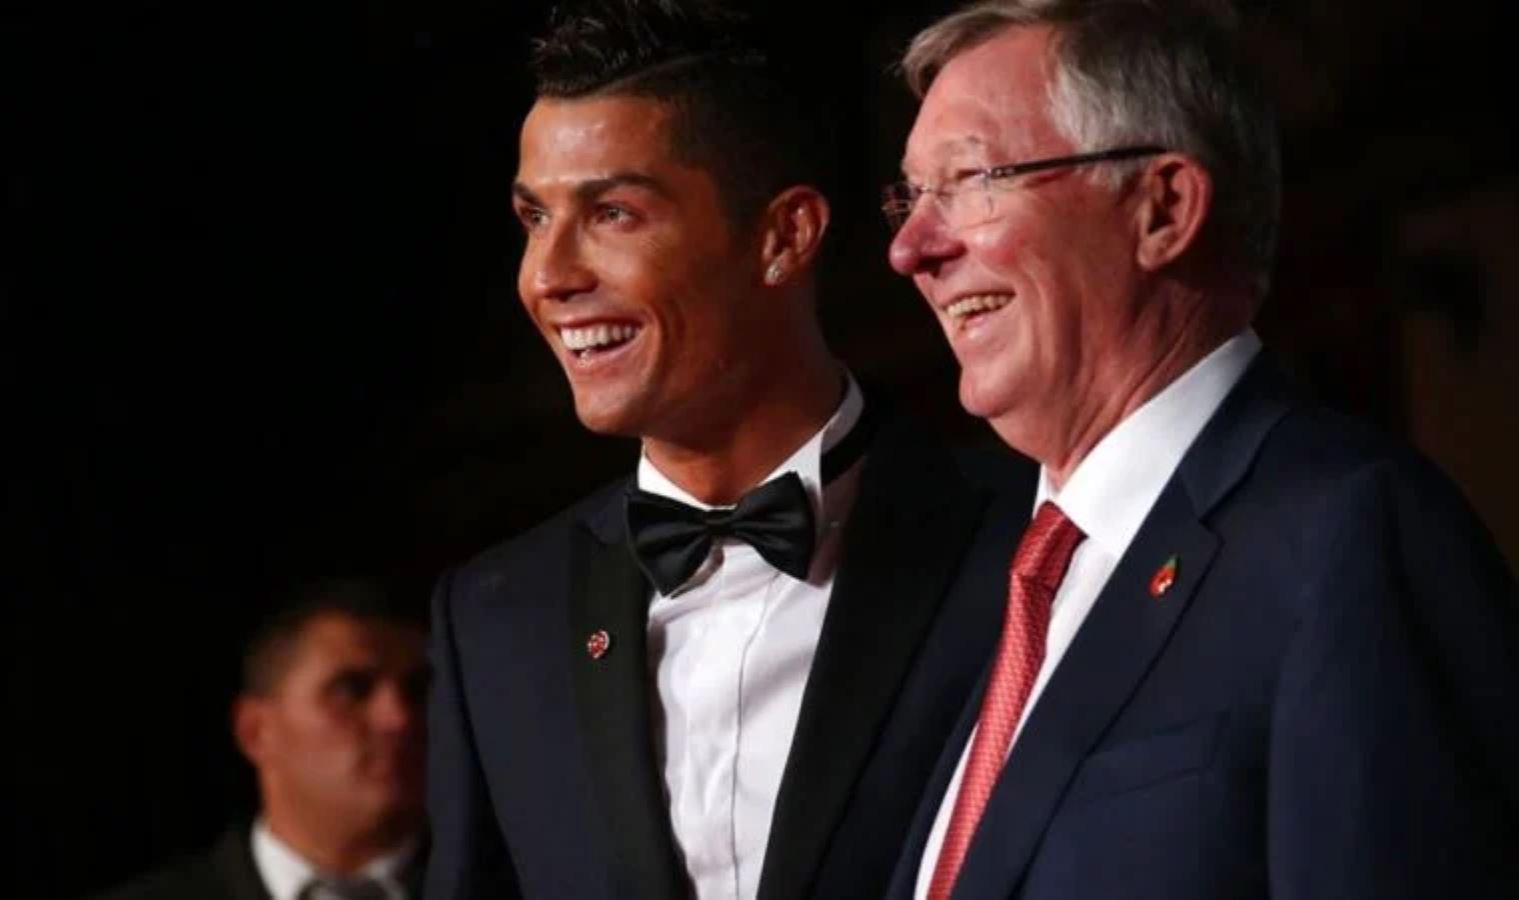 Alex Ferguson, Manchester United'a teknik direktör olarak Carlo Ancelotti'yi önerdi